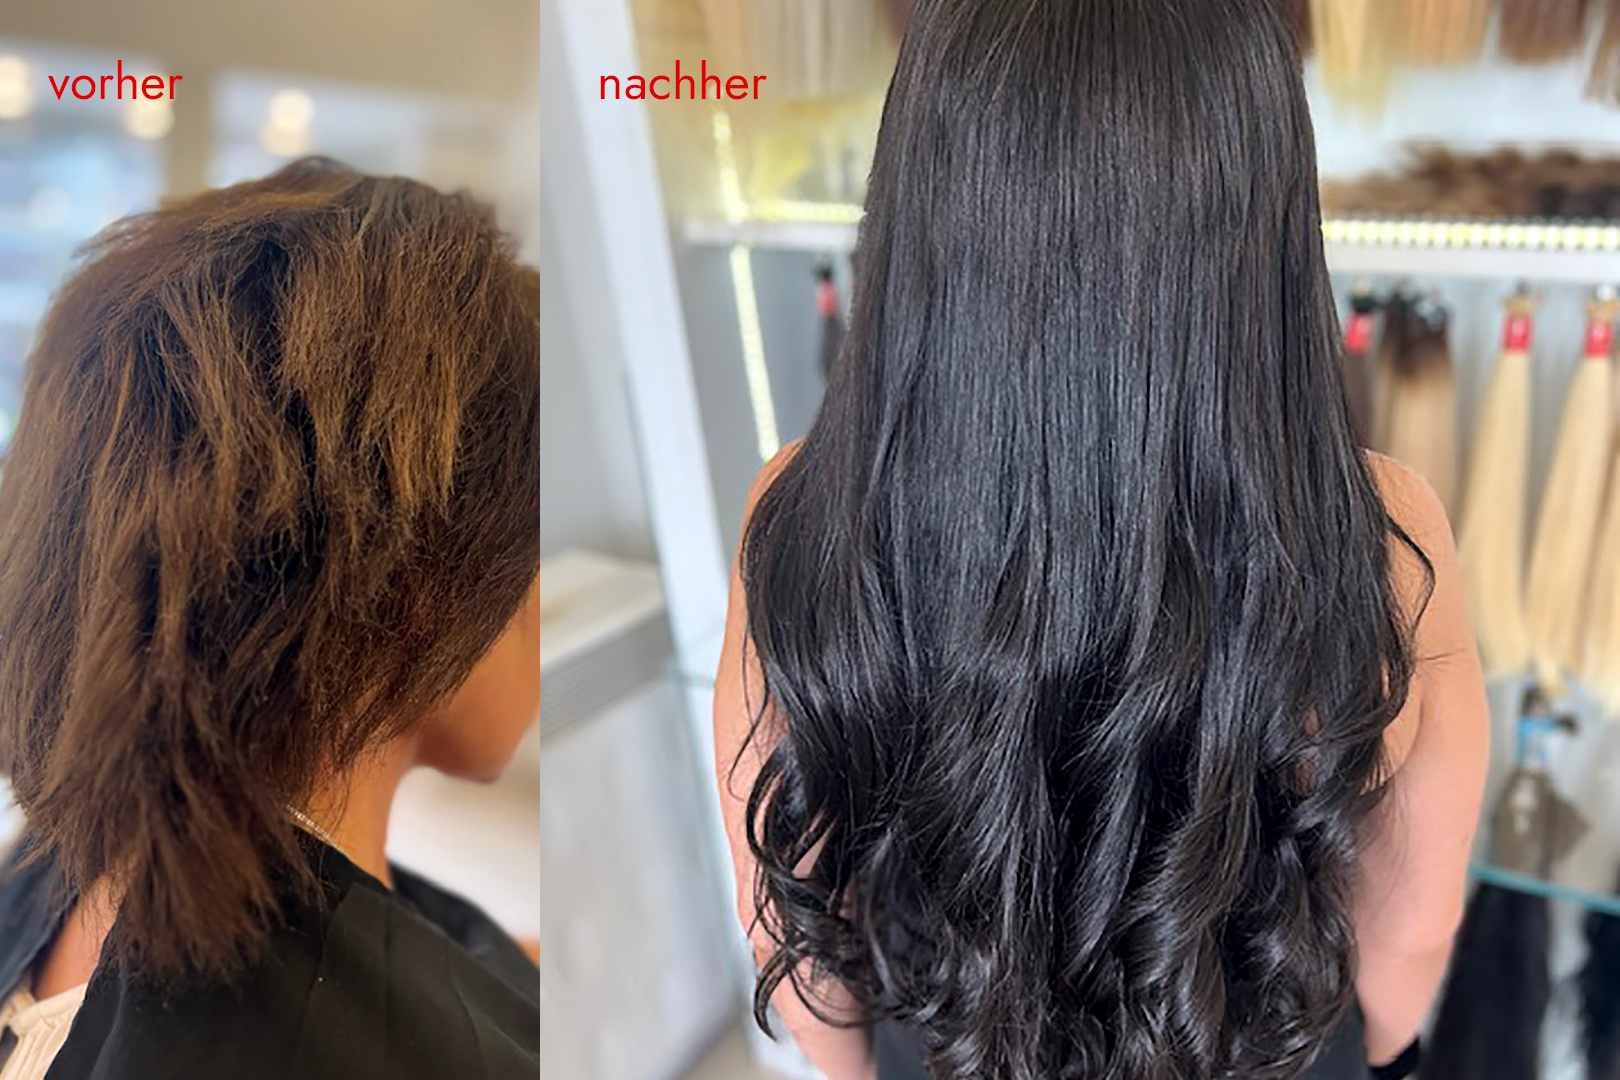 Angelicas Hair Extensions: Kundin vorher und nachher mit Haarverlängerung - balayage black